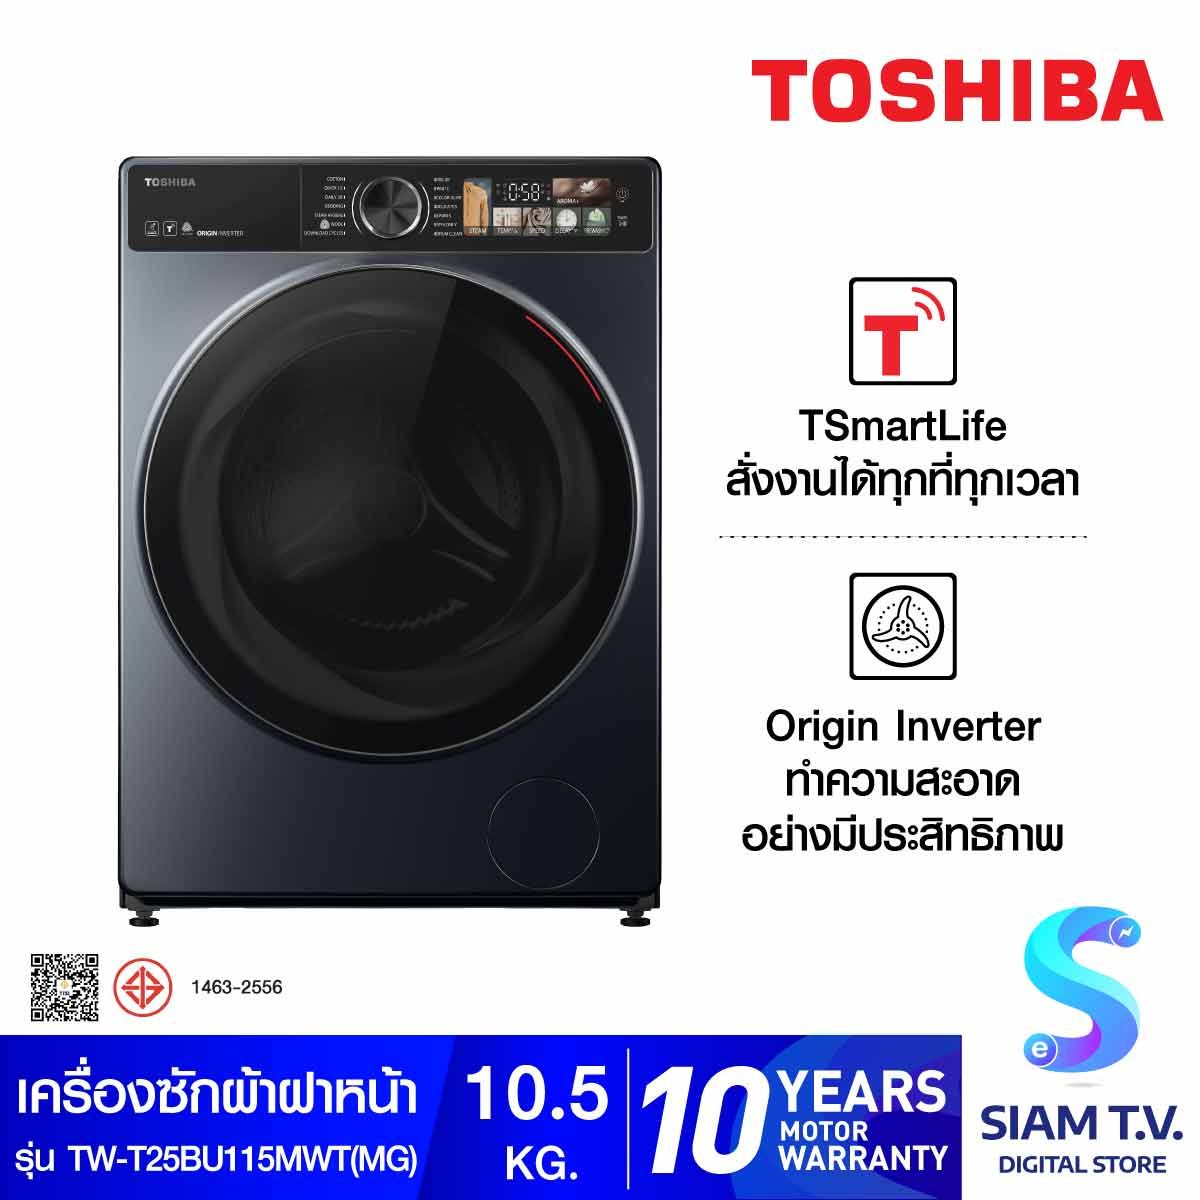 TOSHIBA เครื่องซักผ้าฝาหน้า 10.5Kg. WIFI จอสัมผัส รุ่นTW-T25BU115MWT(MG)